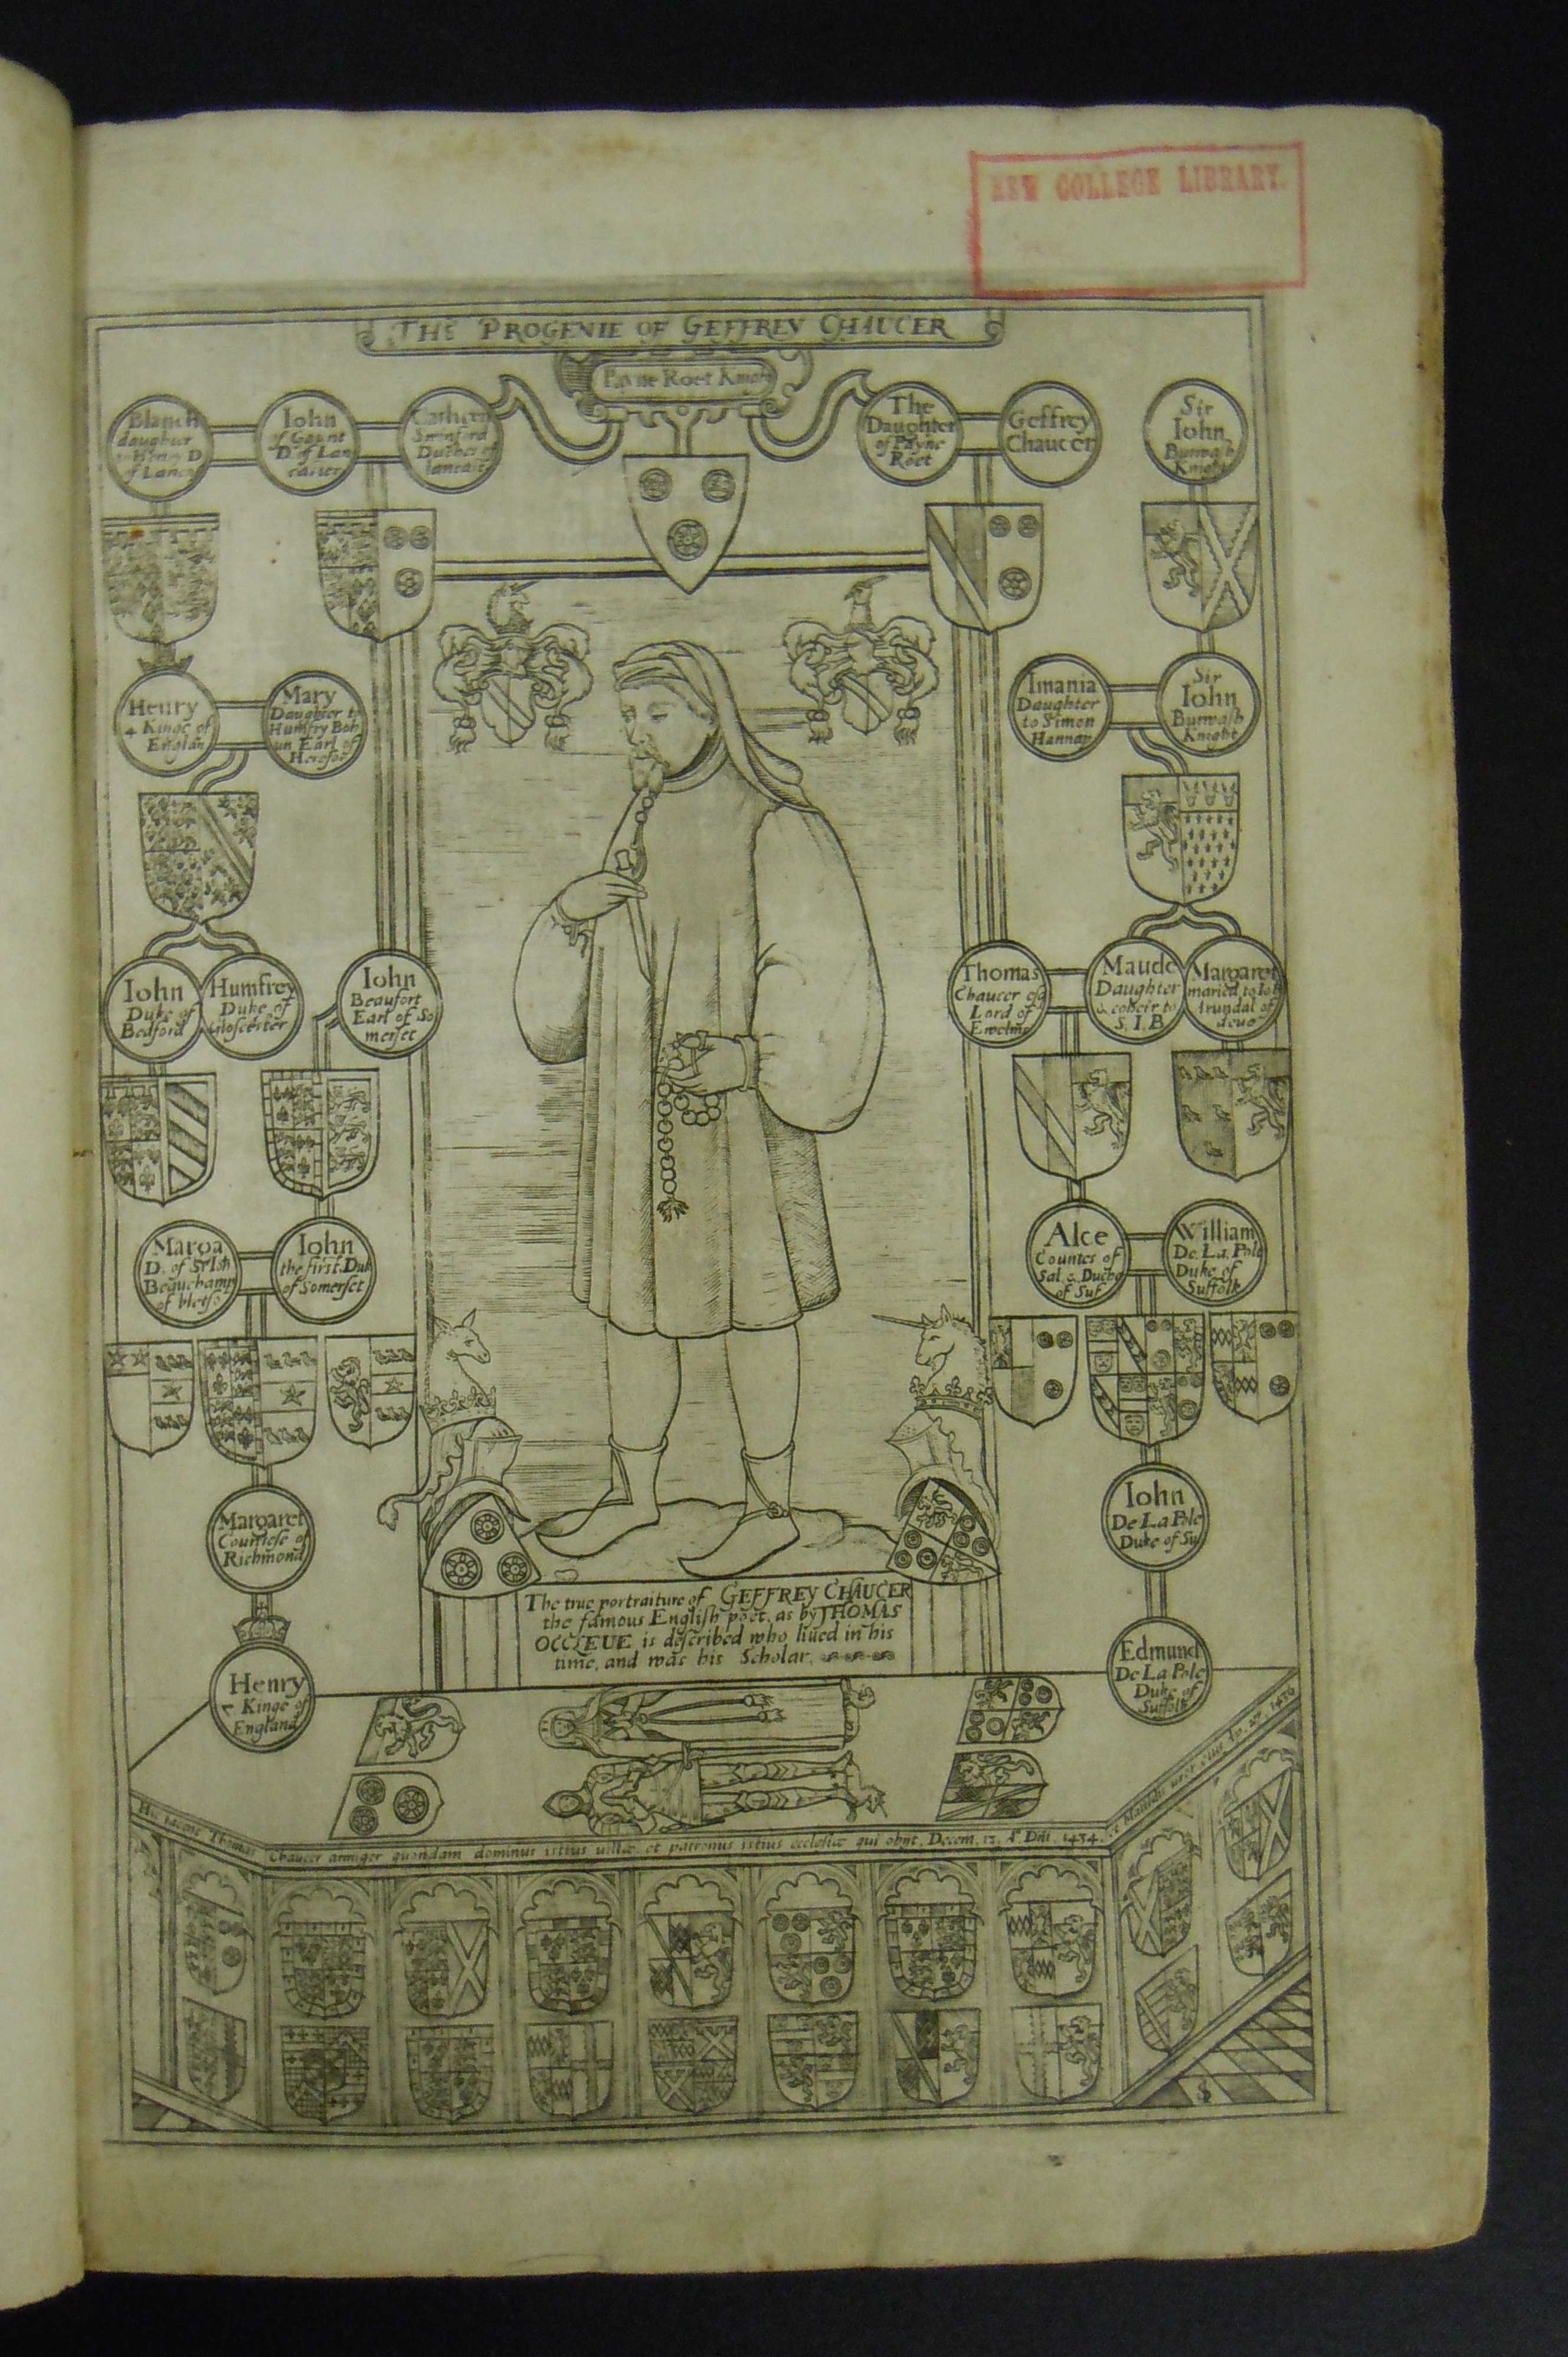 BT1.19.2, precedes bj, Geoffrey Chaucer’s Works (1602)